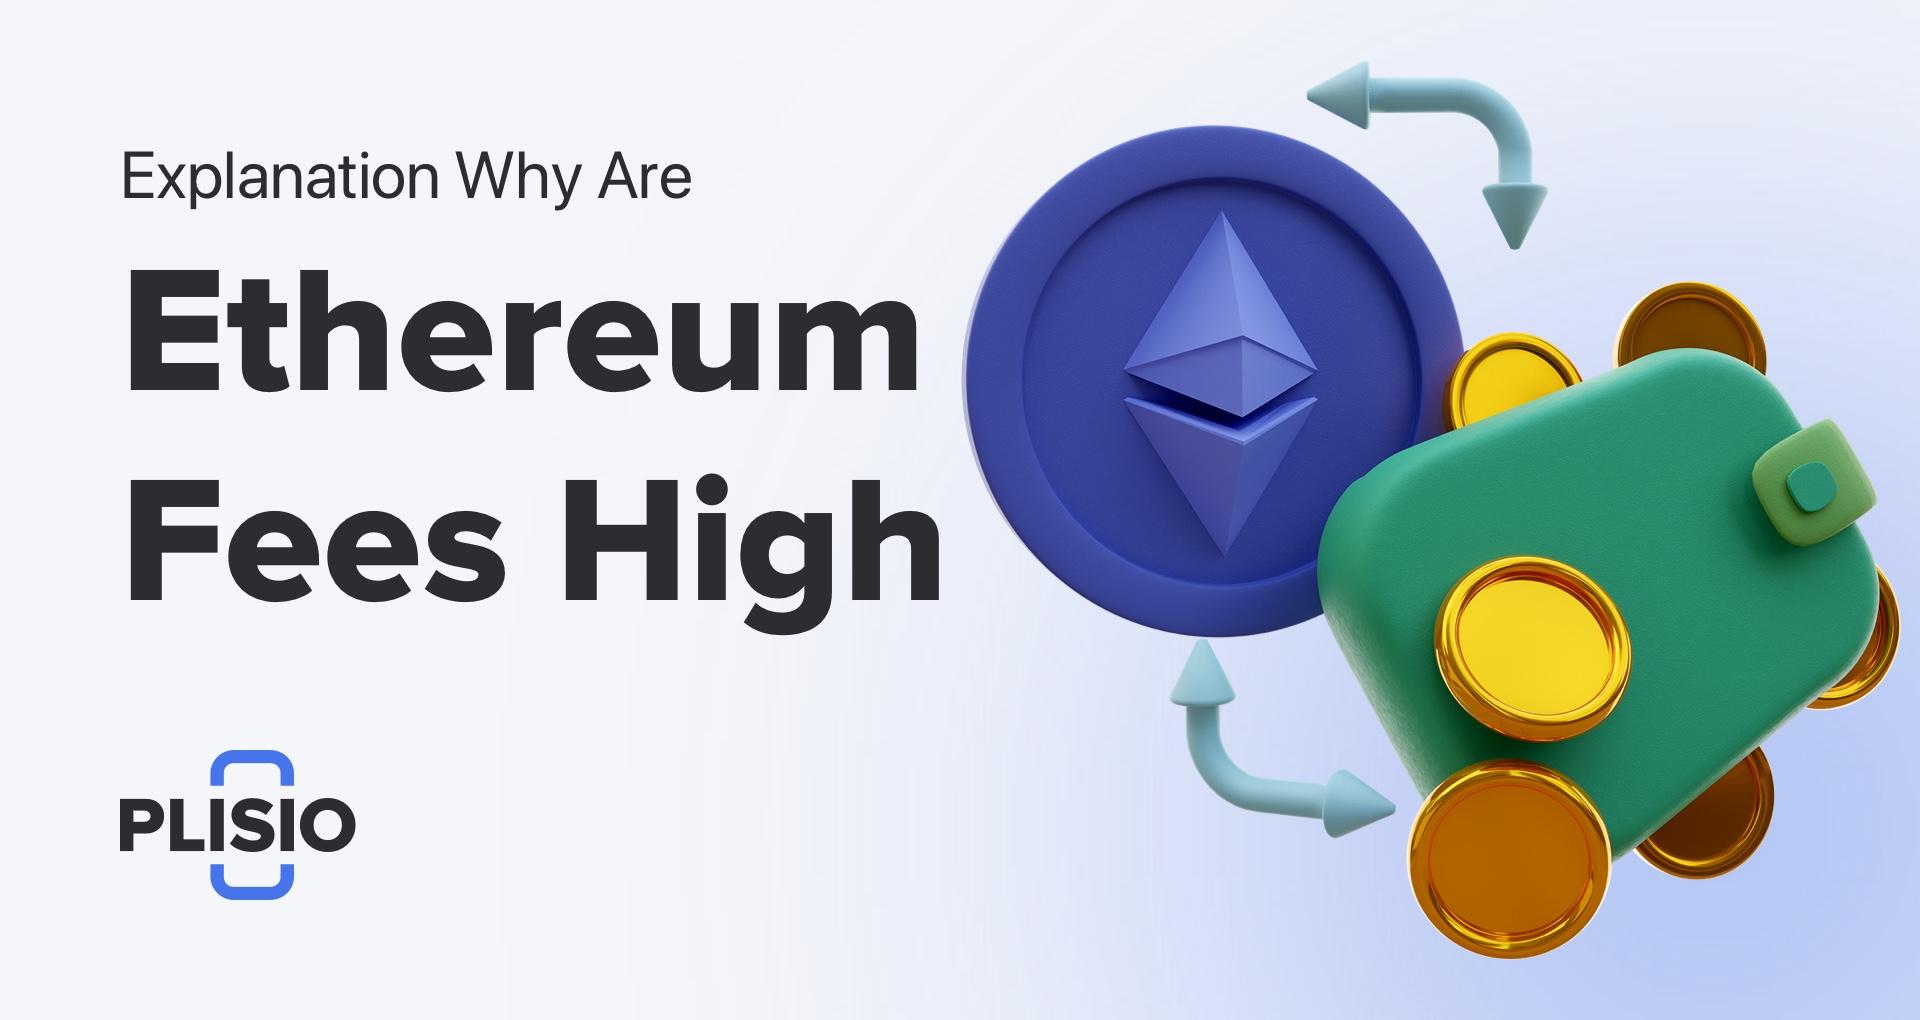 ทำไมค่าธรรมเนียม Ethereum ถึงสูงมากและจะลดได้อย่างไร